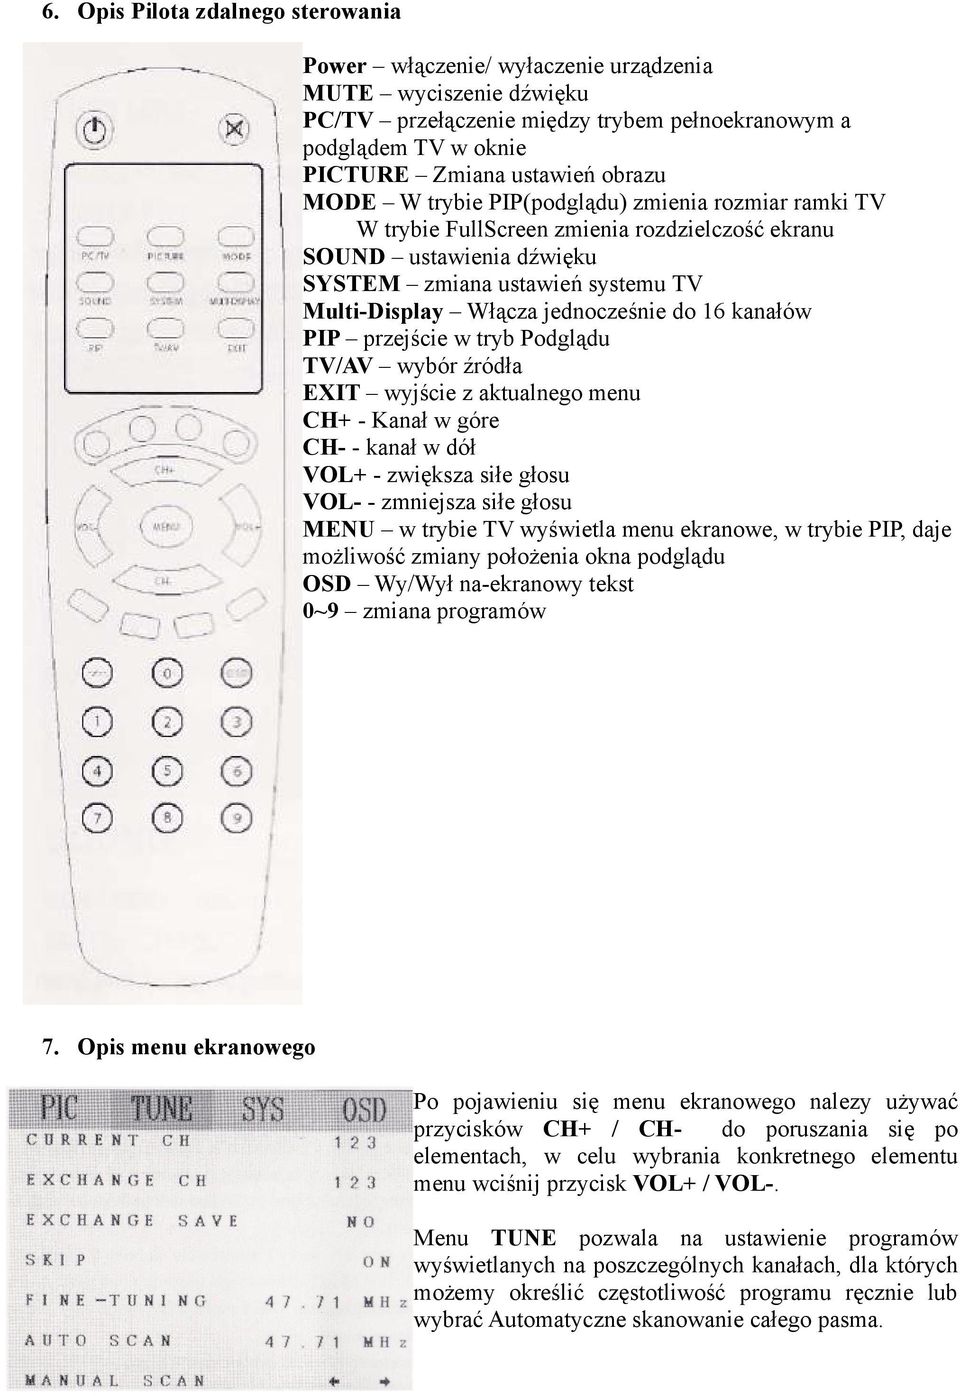 16 kanałów PIP przejście w tryb Podglądu TV/AV wybór źródła EXIT wyjście z aktualnego menu CH+ - Kanał w góre CH- - kanał w dół VOL+ - zwiększa siłe głosu VOL- - zmniejsza siłe głosu MENU w trybie TV